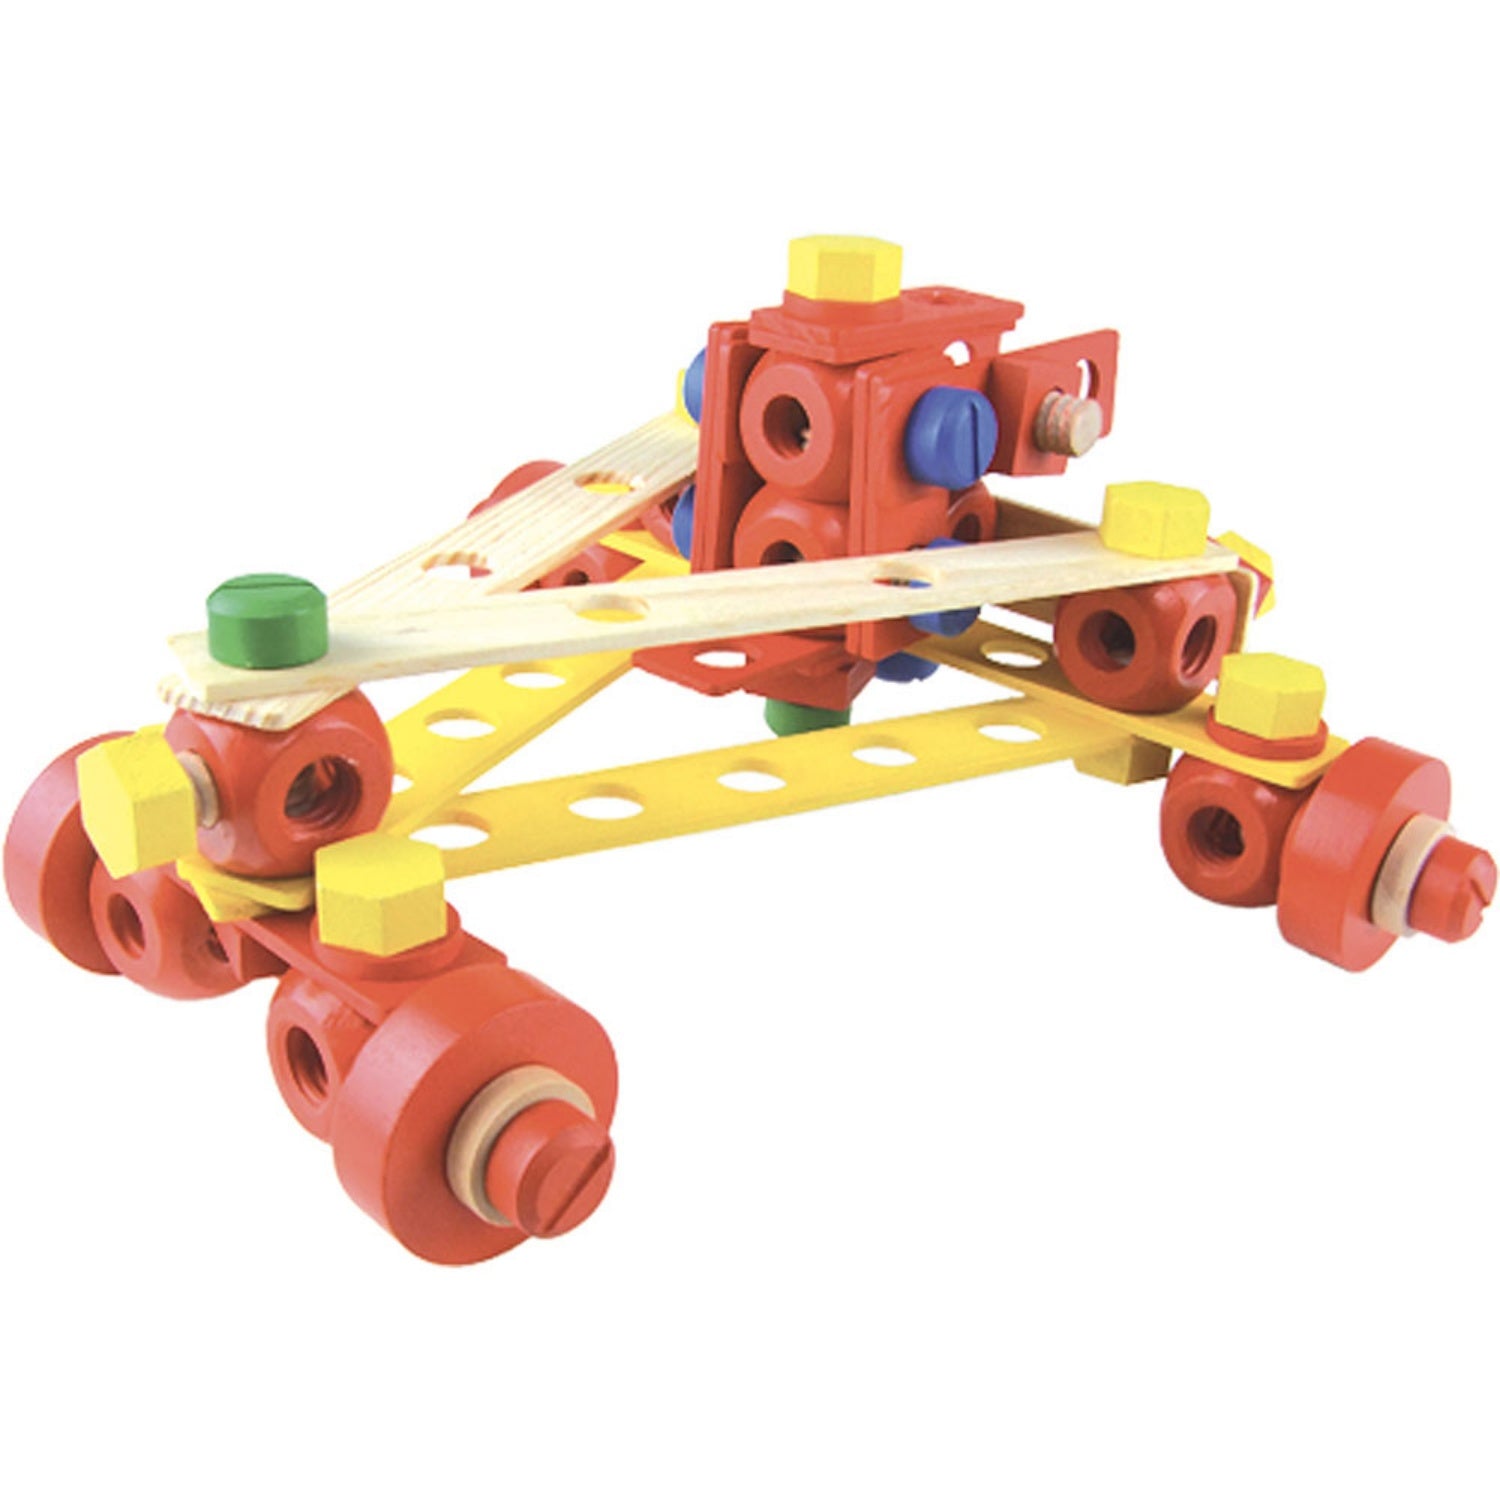 Vilac Wooden Construction Building Set ‘Batibloc’ | Educational Wooden Toy | Car | BeoVERDE.ie